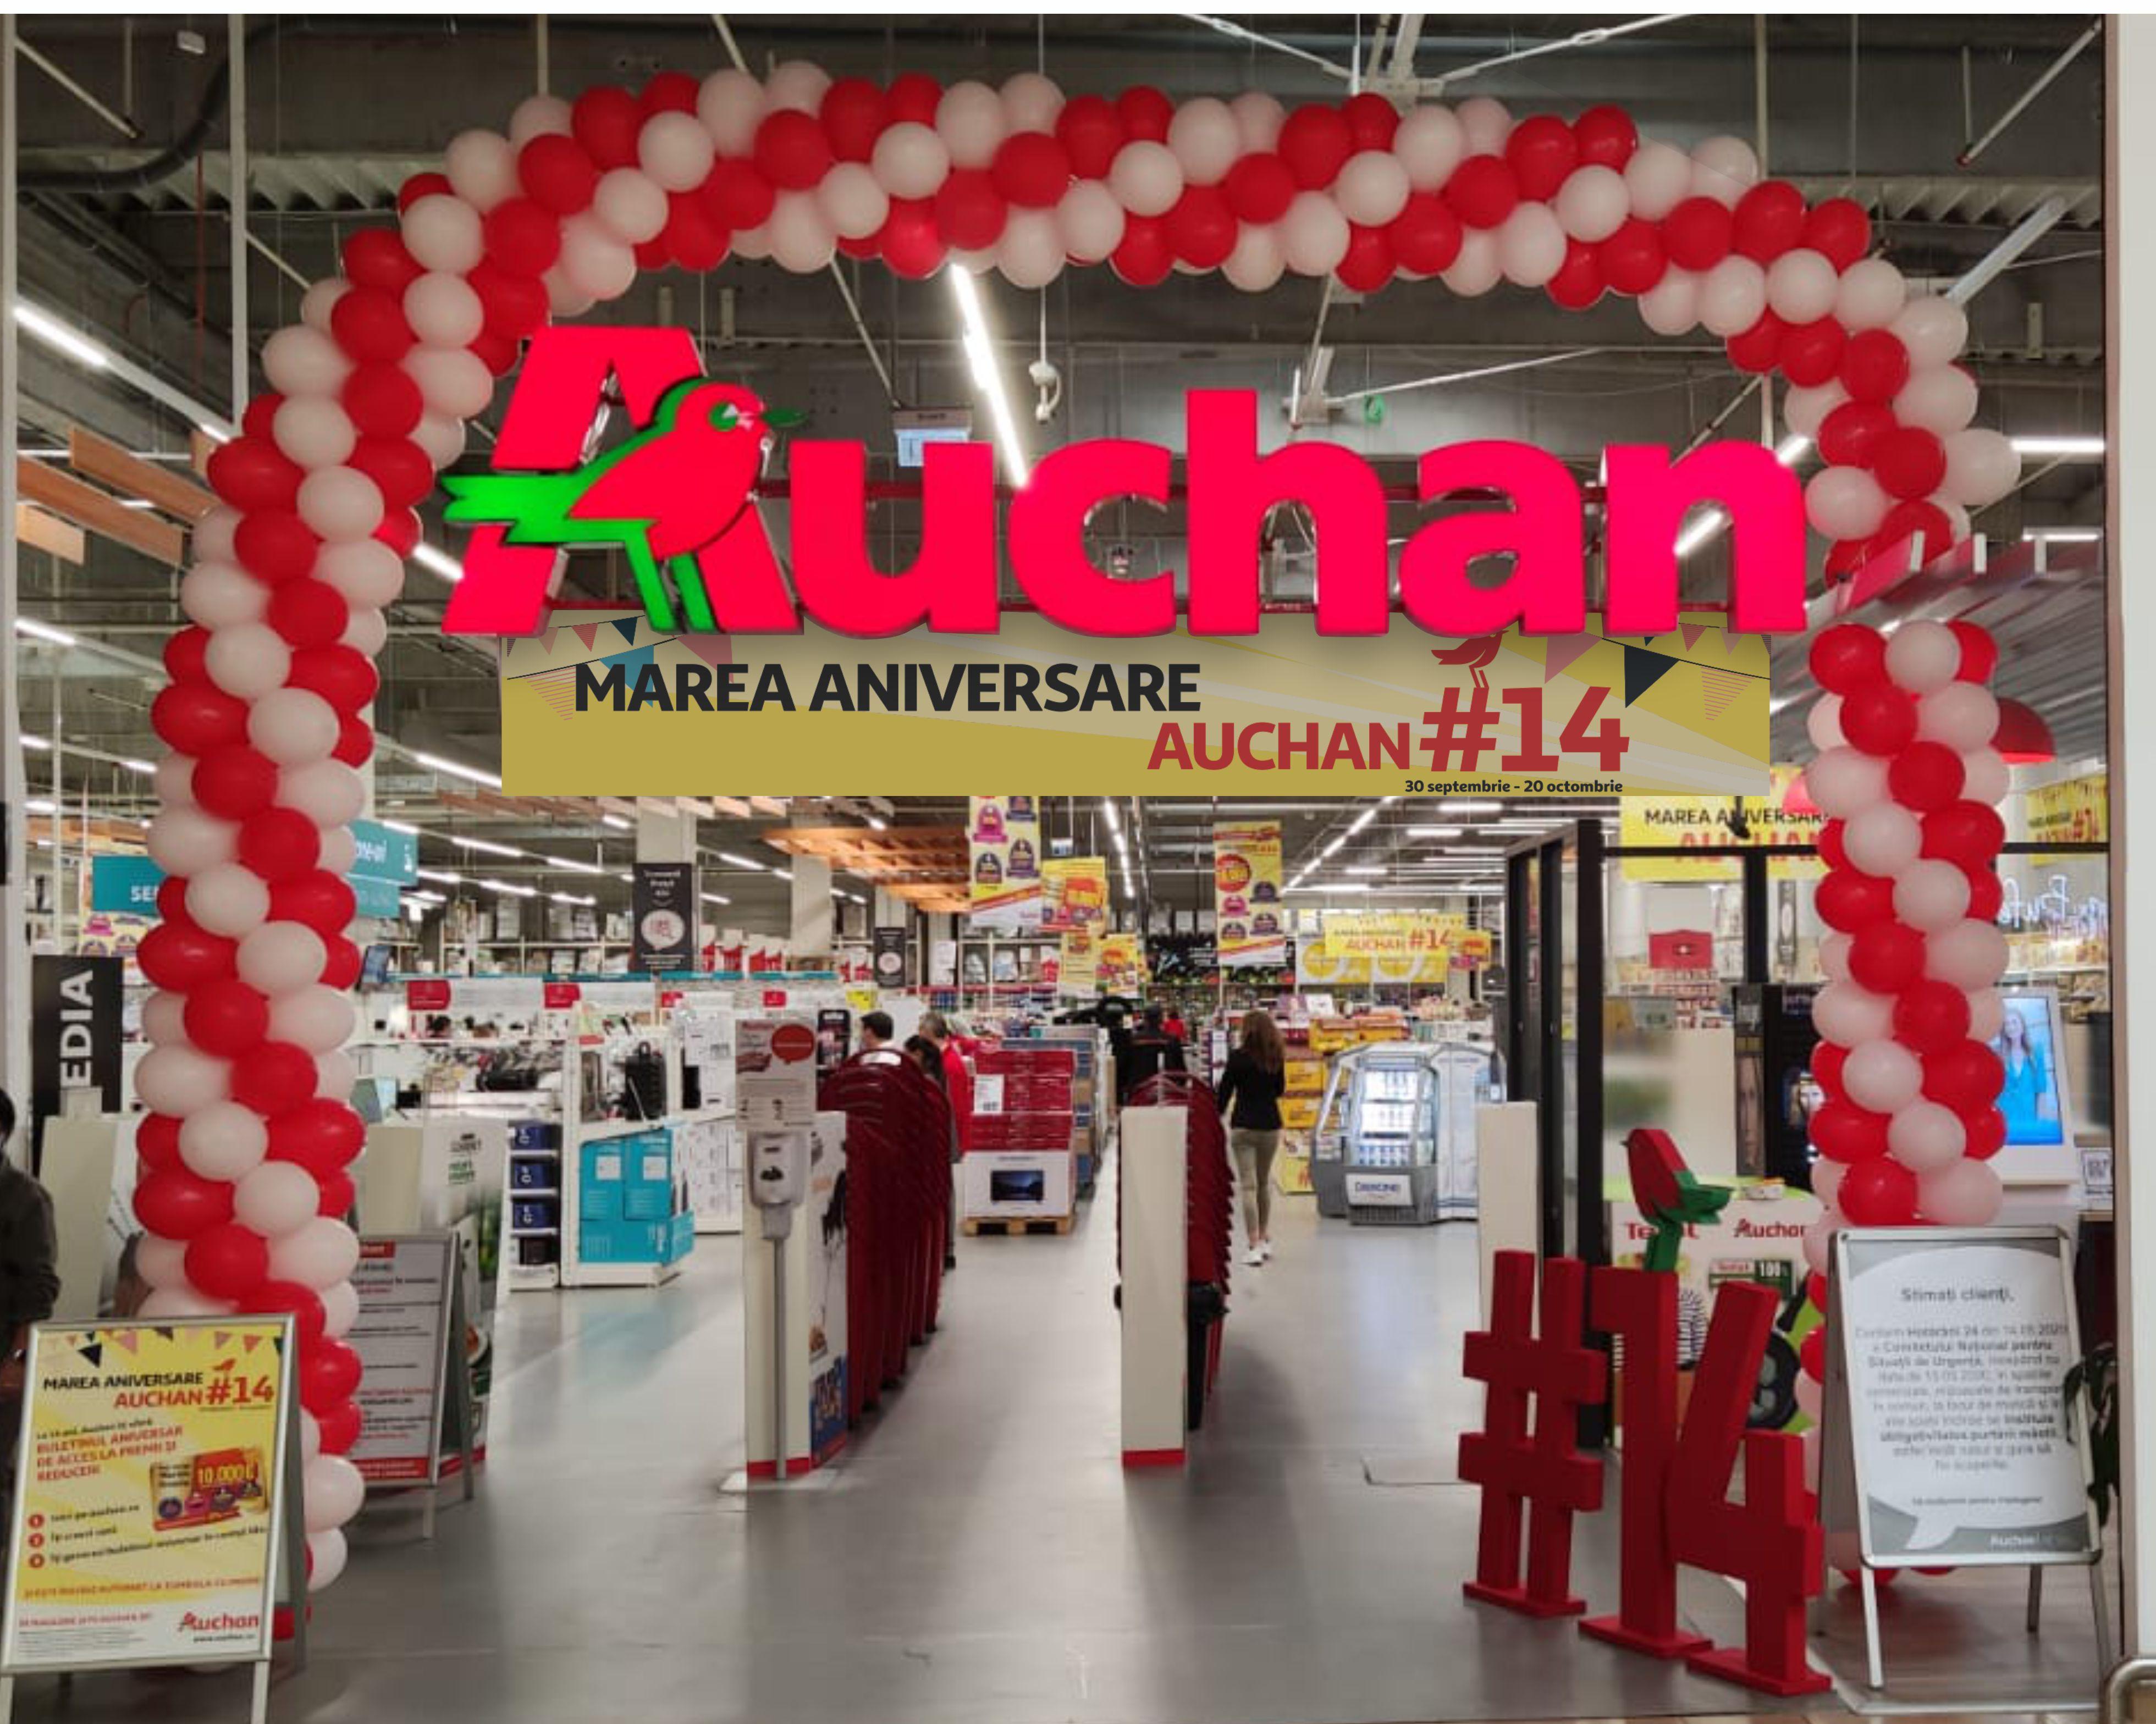 (P) Sărbătorim împreună Marea Aniversare Auchan #14! Până pe 20 octombrie ai acces la mii de premii și surprize